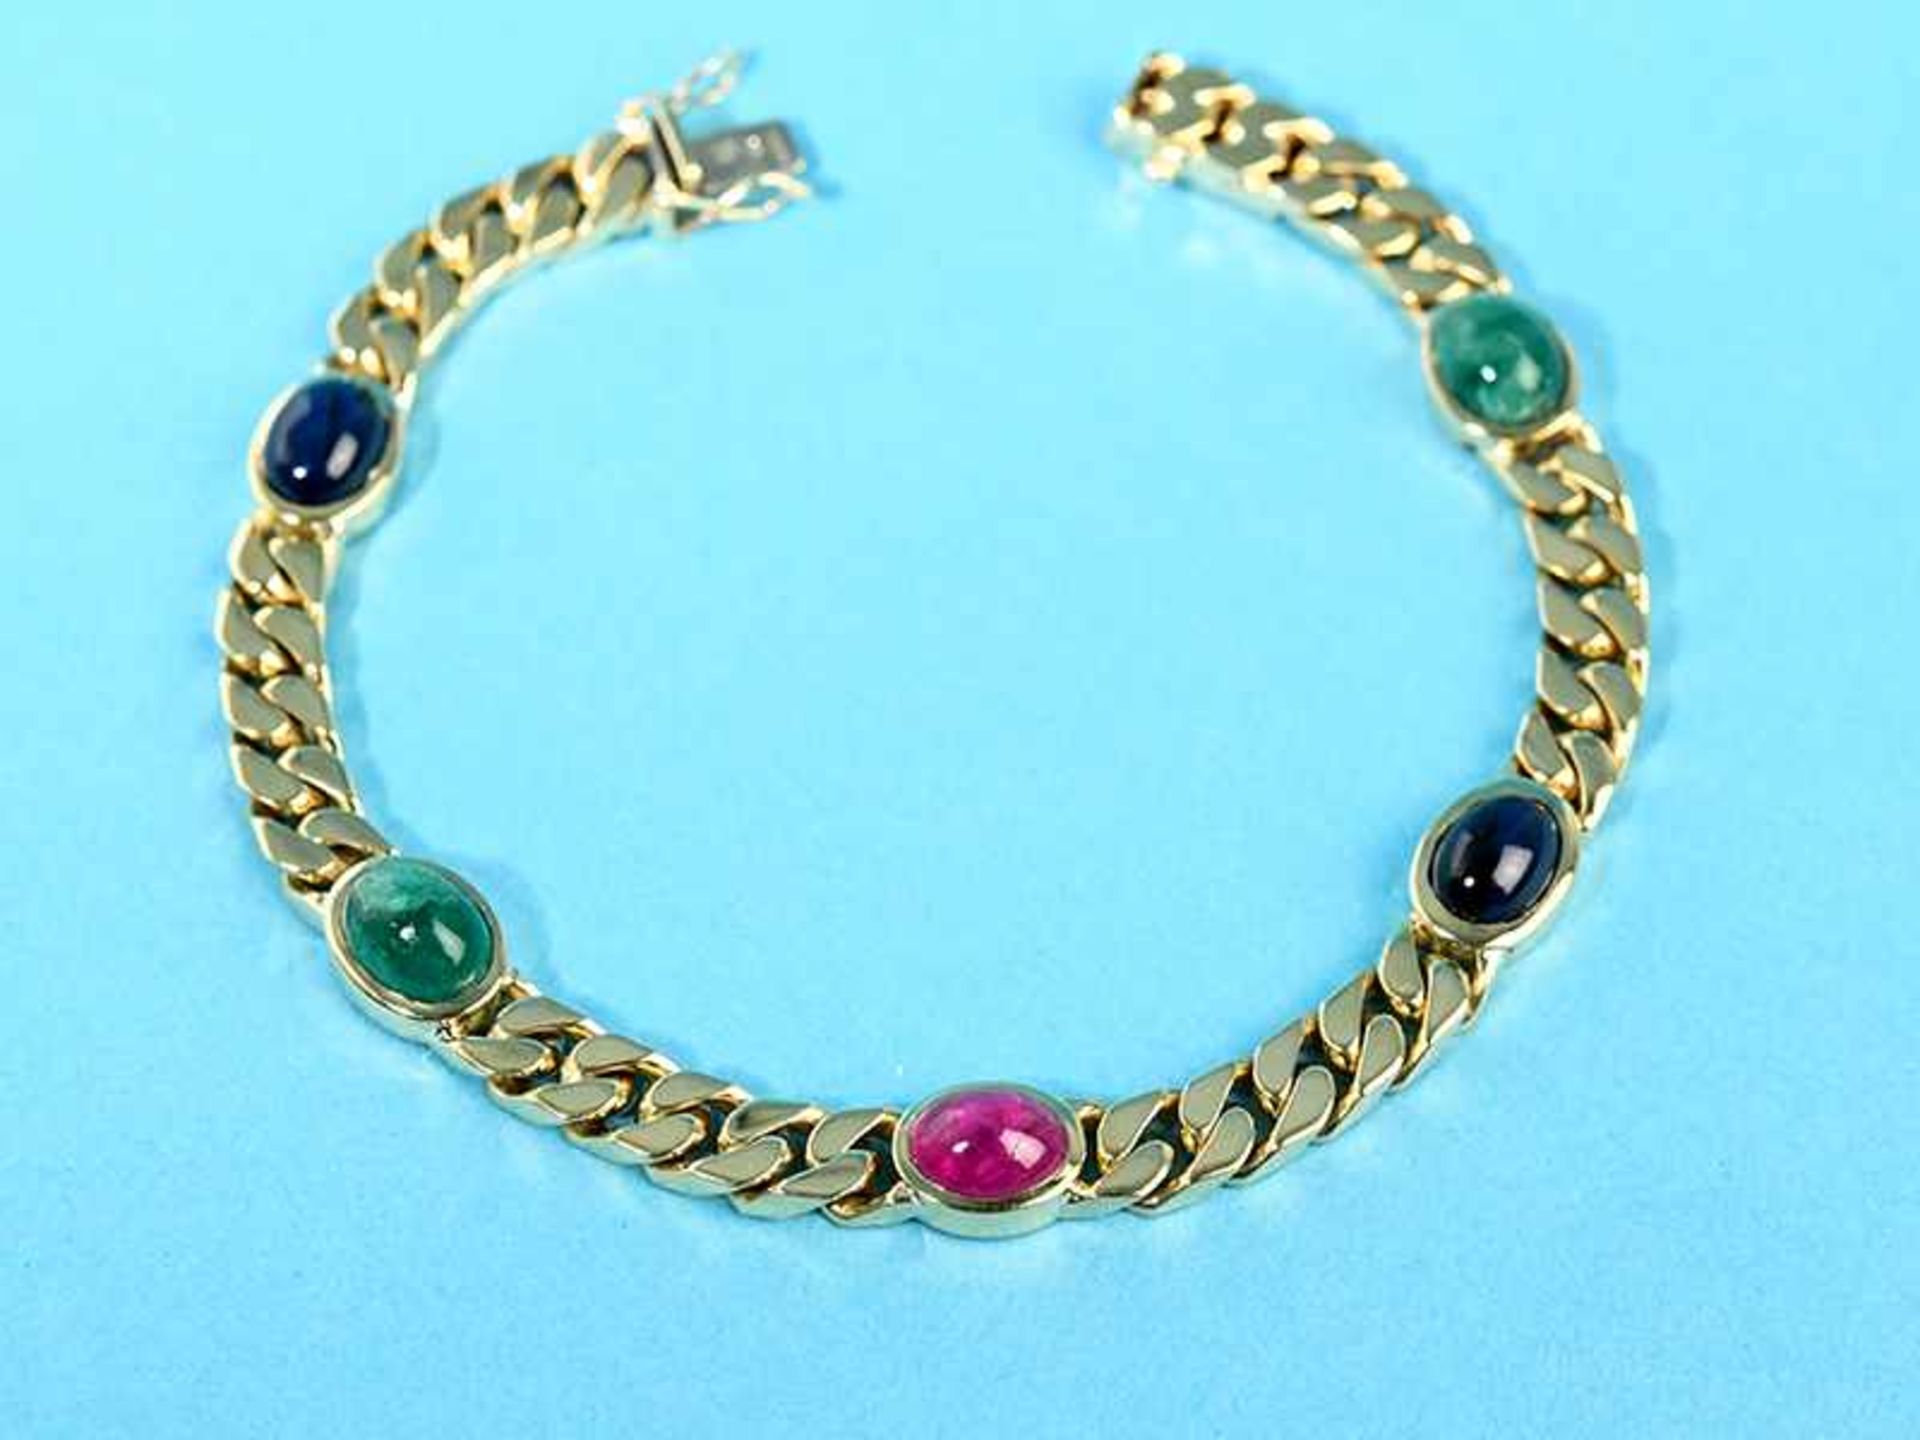 Armband mit Rubin-, Saphir- und Smaragd-Cabochon, Goldschmiedearbeit, 80- er Jahre 750/- Gelbgold.